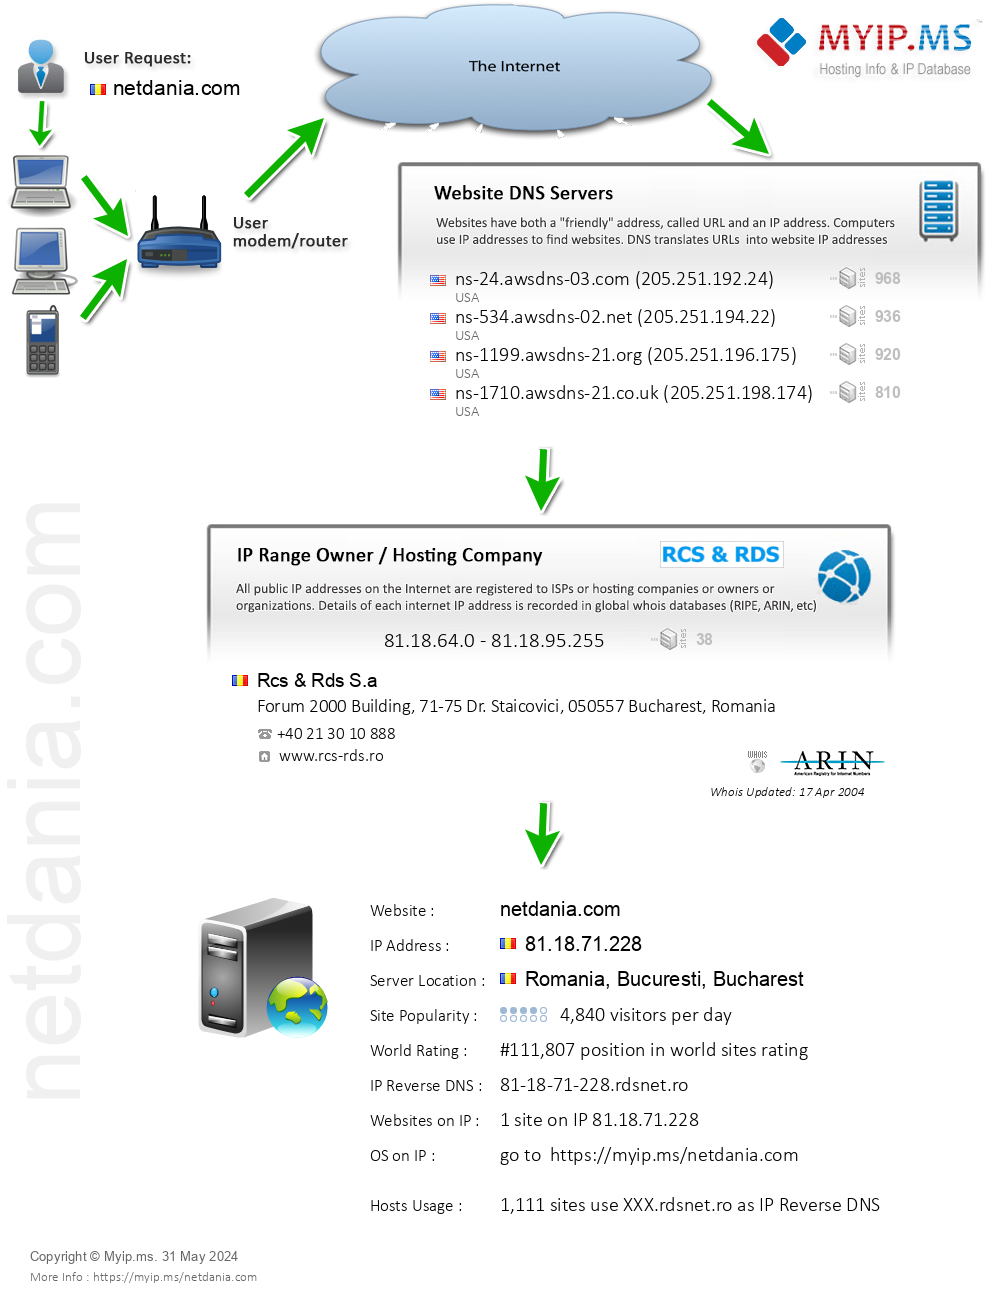 Netdania.com - Website Hosting Visual IP Diagram